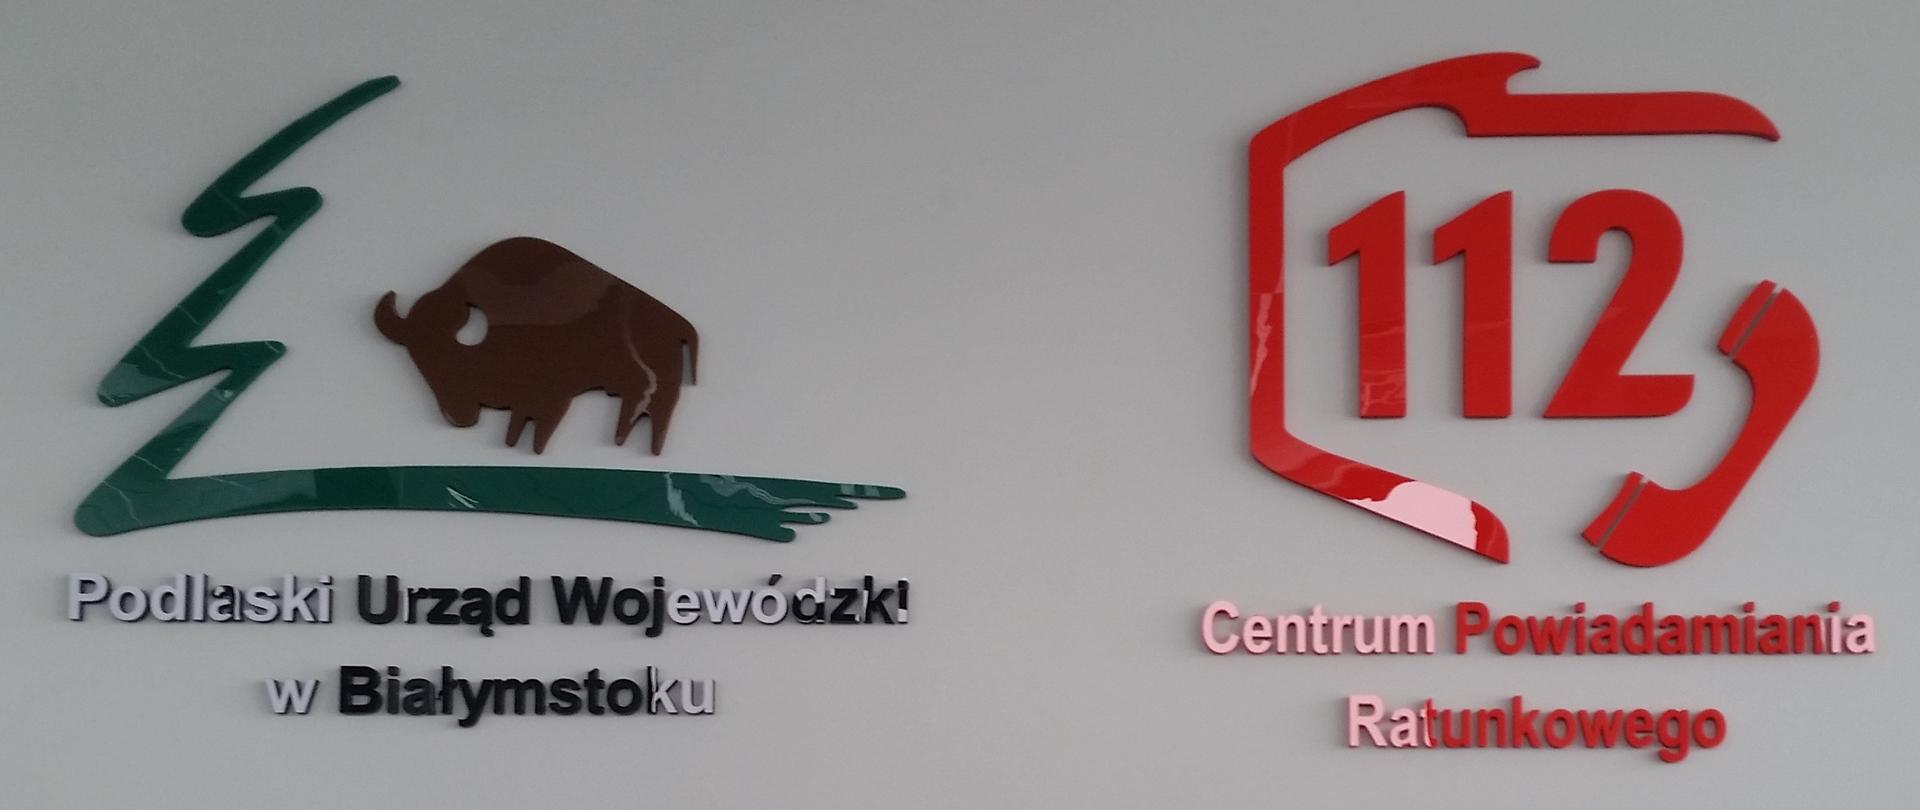 Umieszczone na ścianie logotypy Podlaskiego Urzędu Wojewódzkiego oraz Centrum Powiadamiania Ratunkowego.